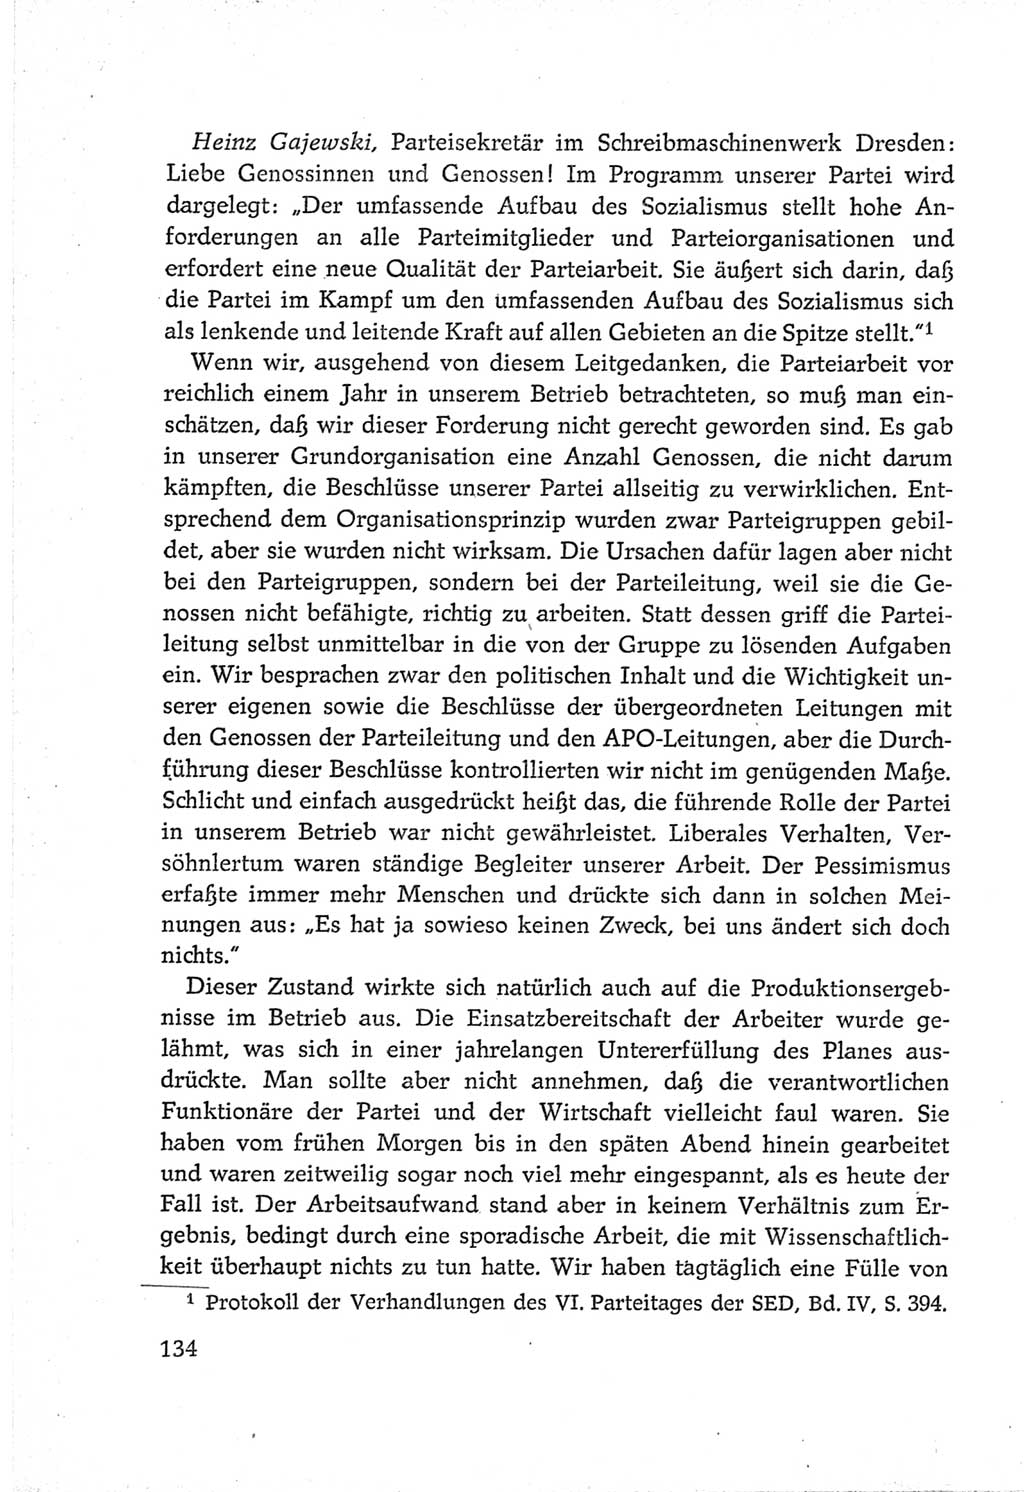 Protokoll der Verhandlungen des Ⅵ. Parteitages der Sozialistischen Einheitspartei Deutschlands (SED) [Deutsche Demokratische Republik (DDR)] 1963, Band Ⅲ, Seite 134 (Prot. Verh. Ⅵ. PT SED DDR 1963, Bd. Ⅲ, S. 134)